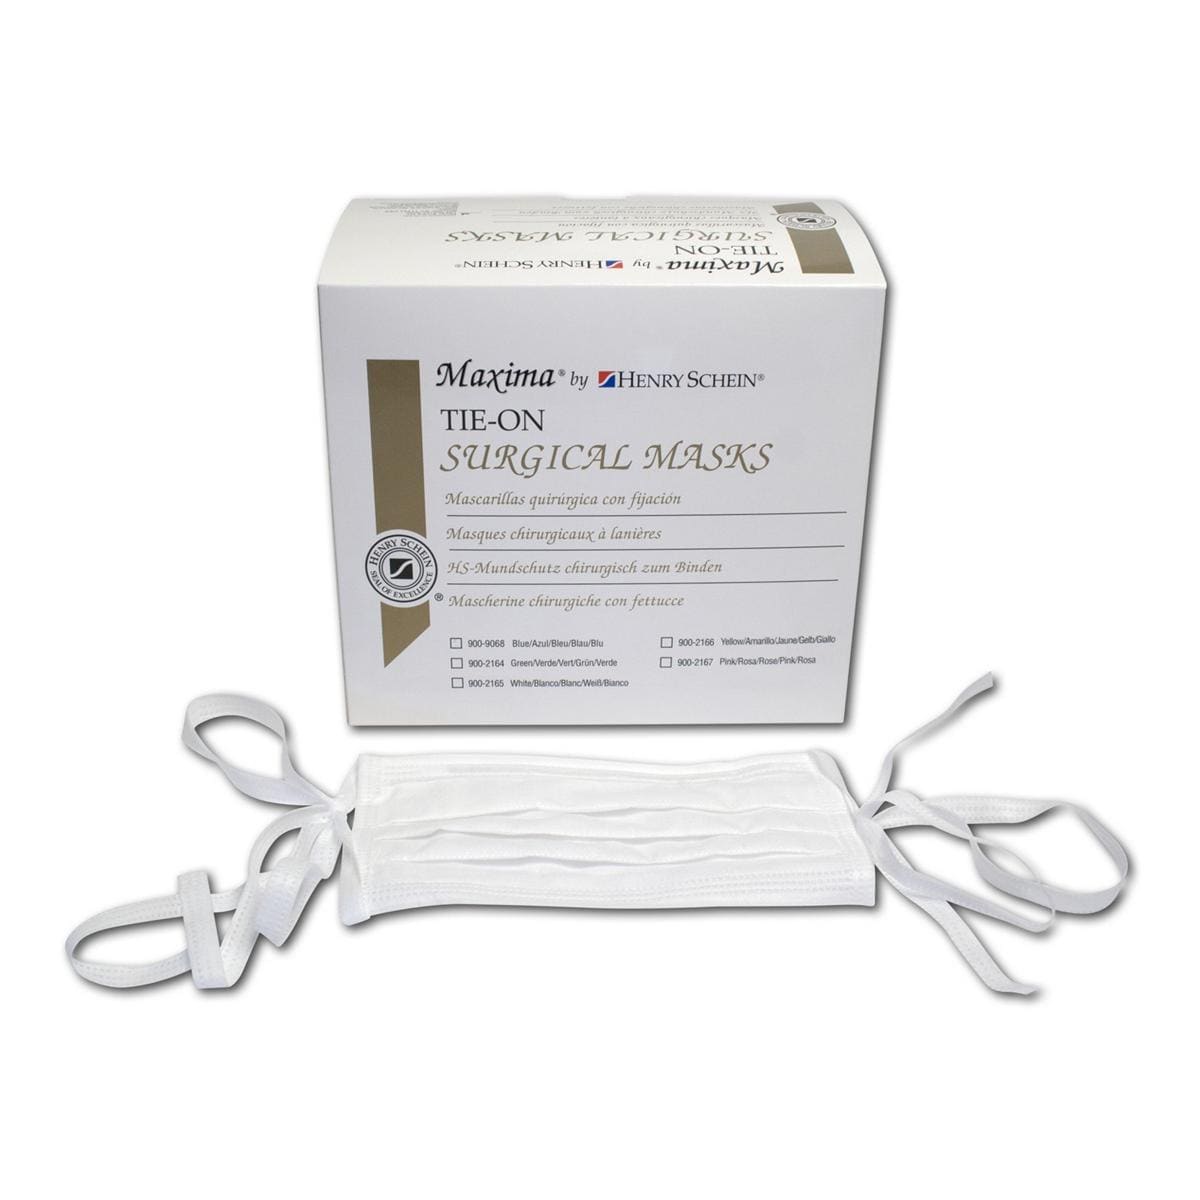 HS-Maxima® Mundschutz chirurgisch zum Binden - Weiß, 3-lagig, Packung 50 Stück